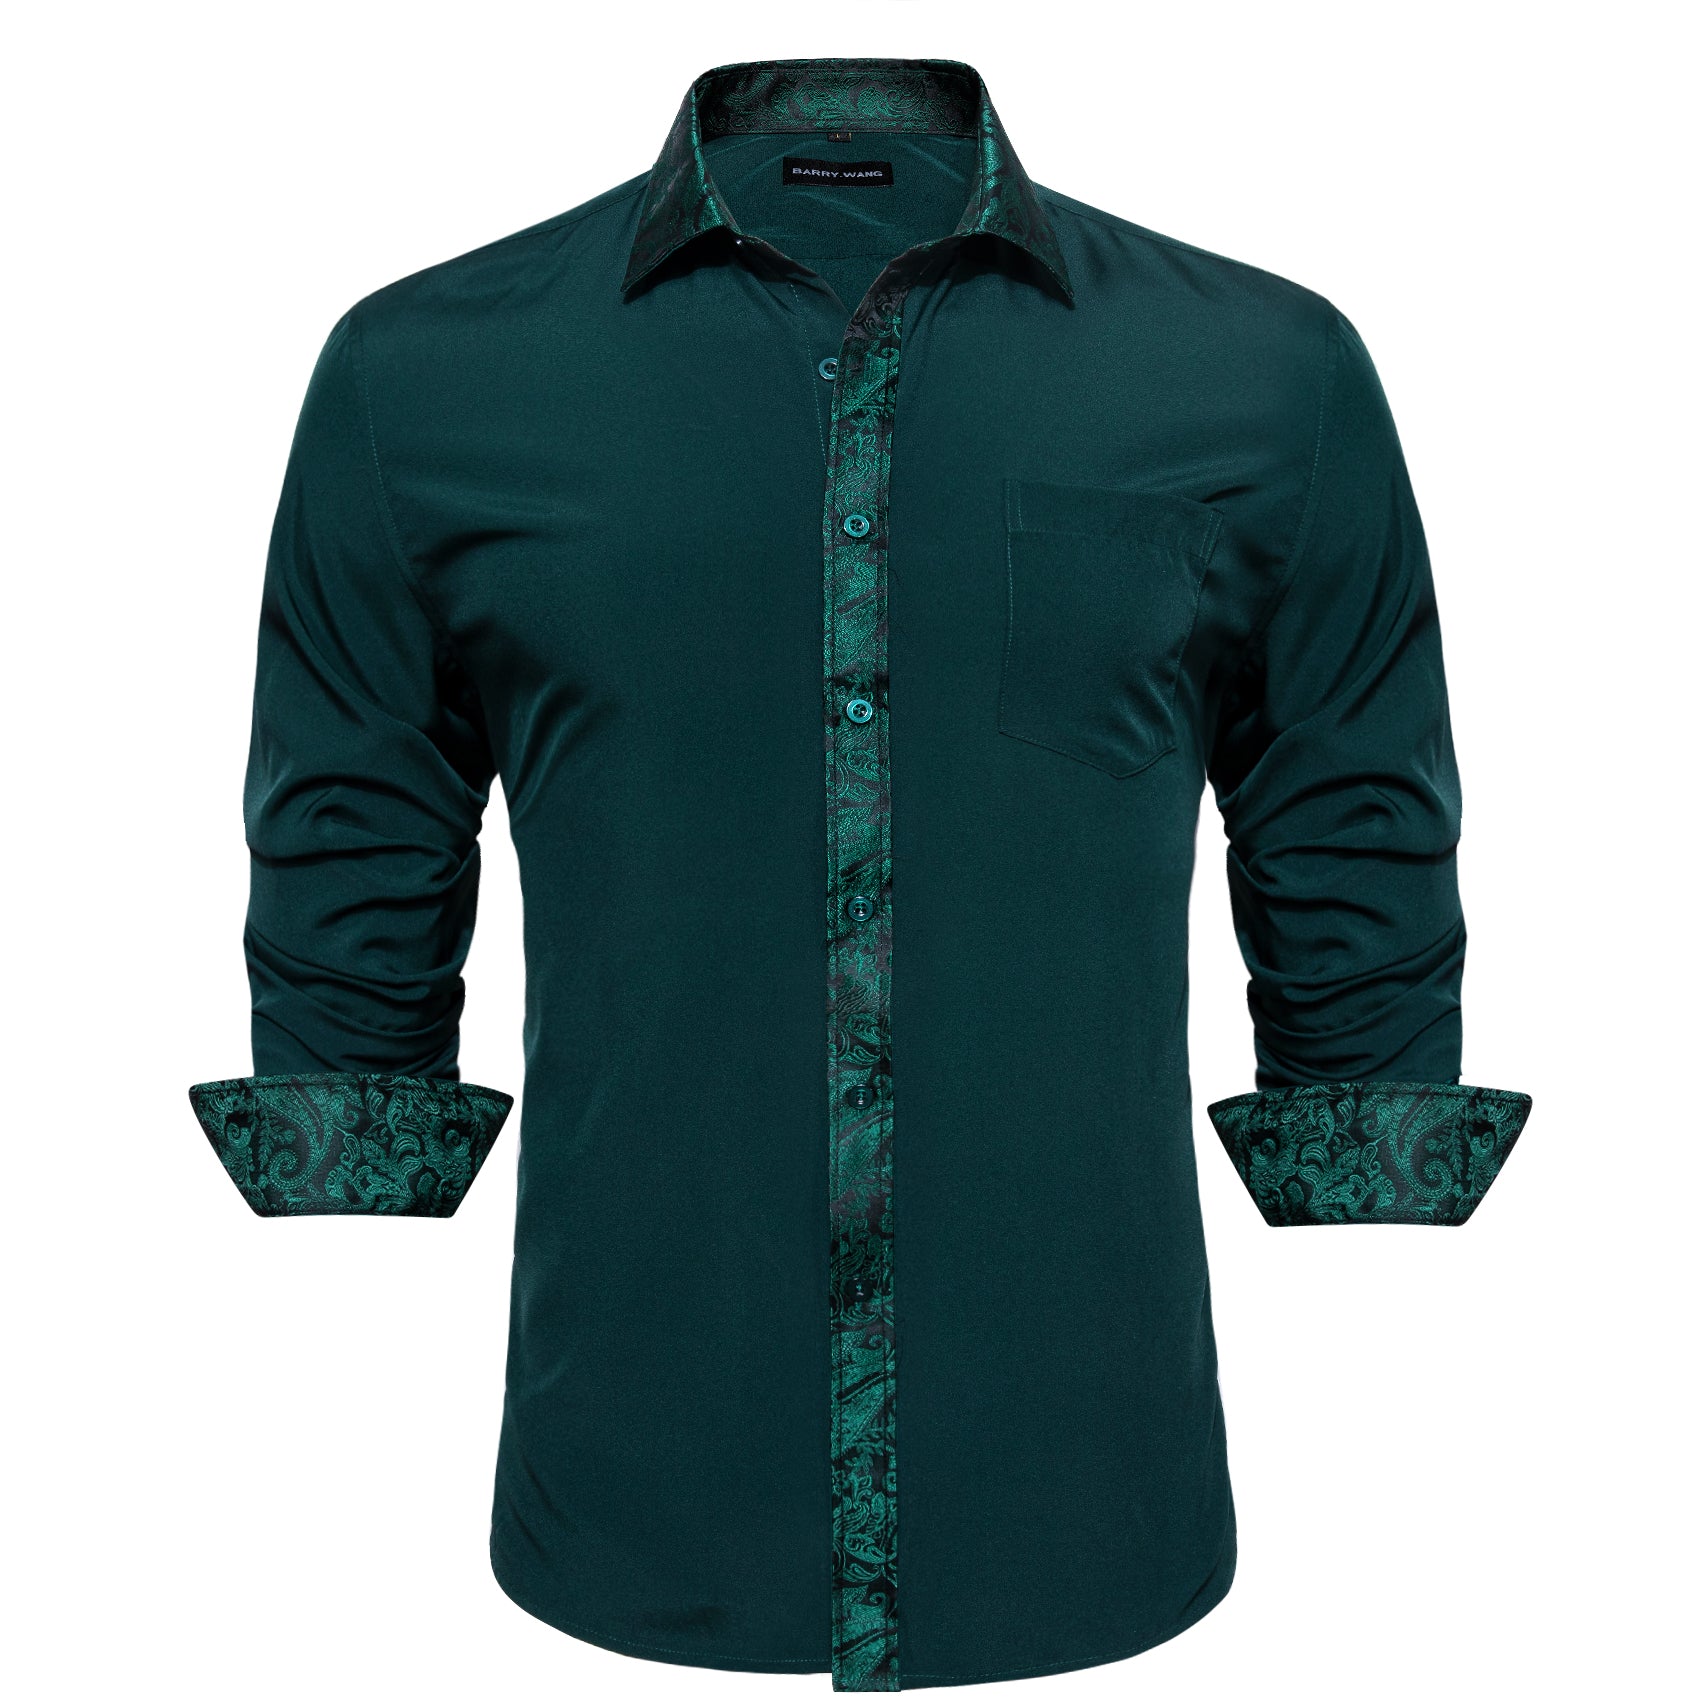 Barry.wang Button Down Shirt Dark Green Splicing Men's Dress Shirt Formal Business